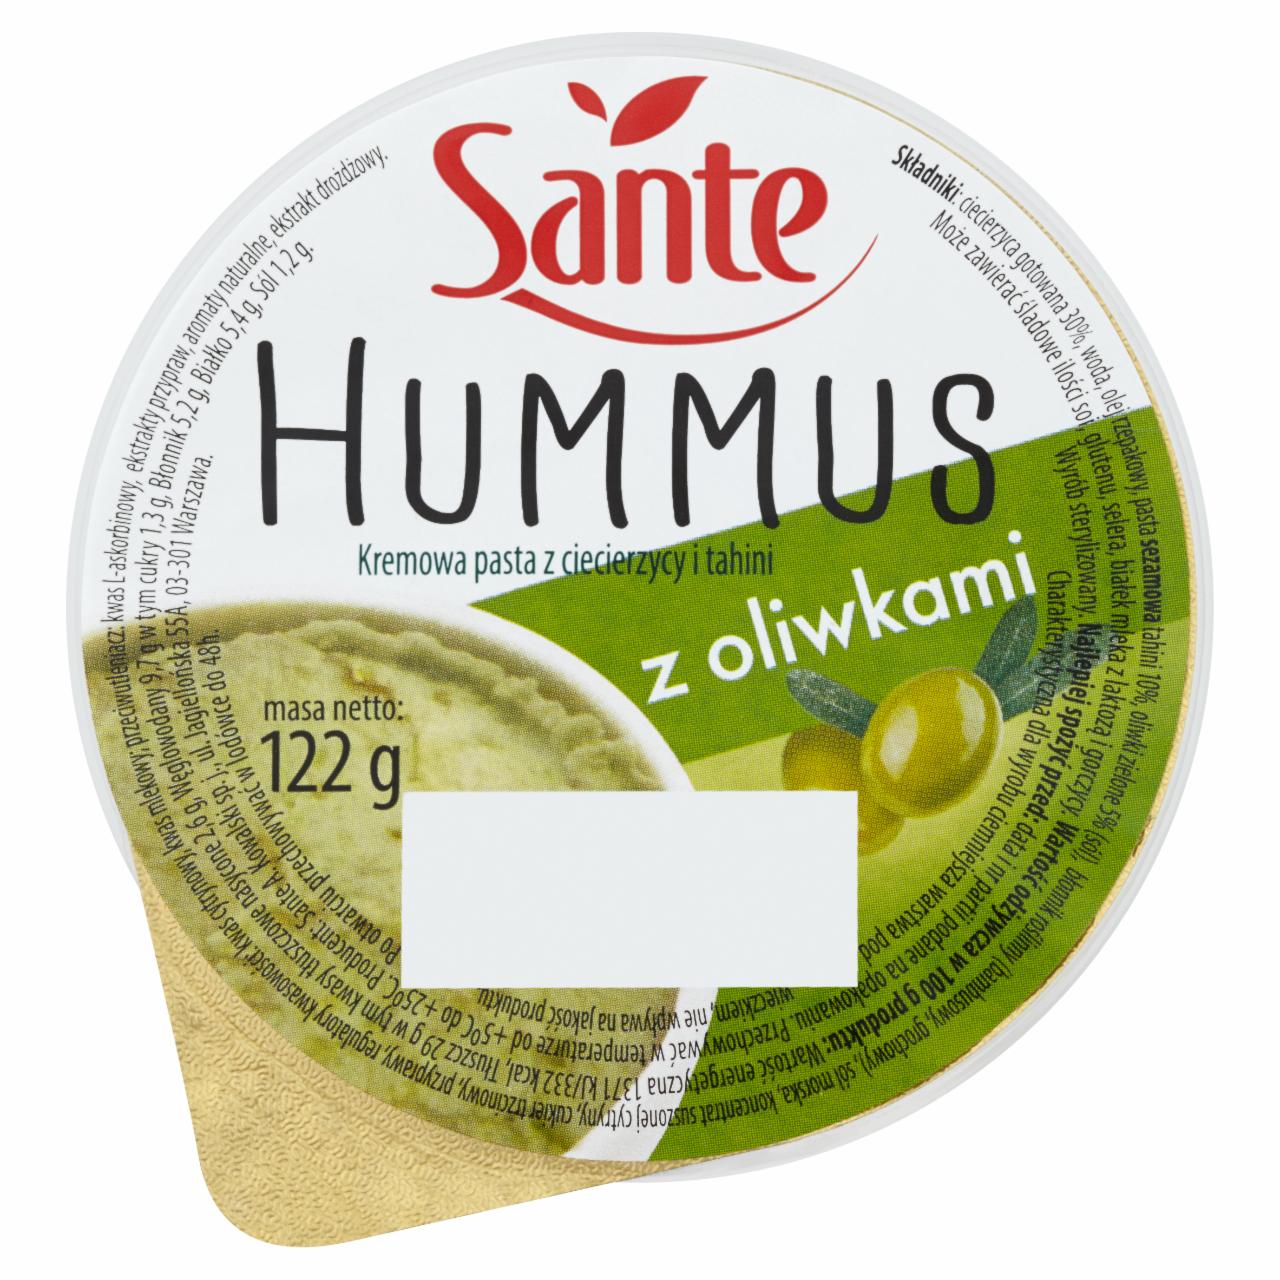 Zdjęcia - Sante Hummus z oliwkami Kremowa pasta z ciecierzycy i tahini 122 g